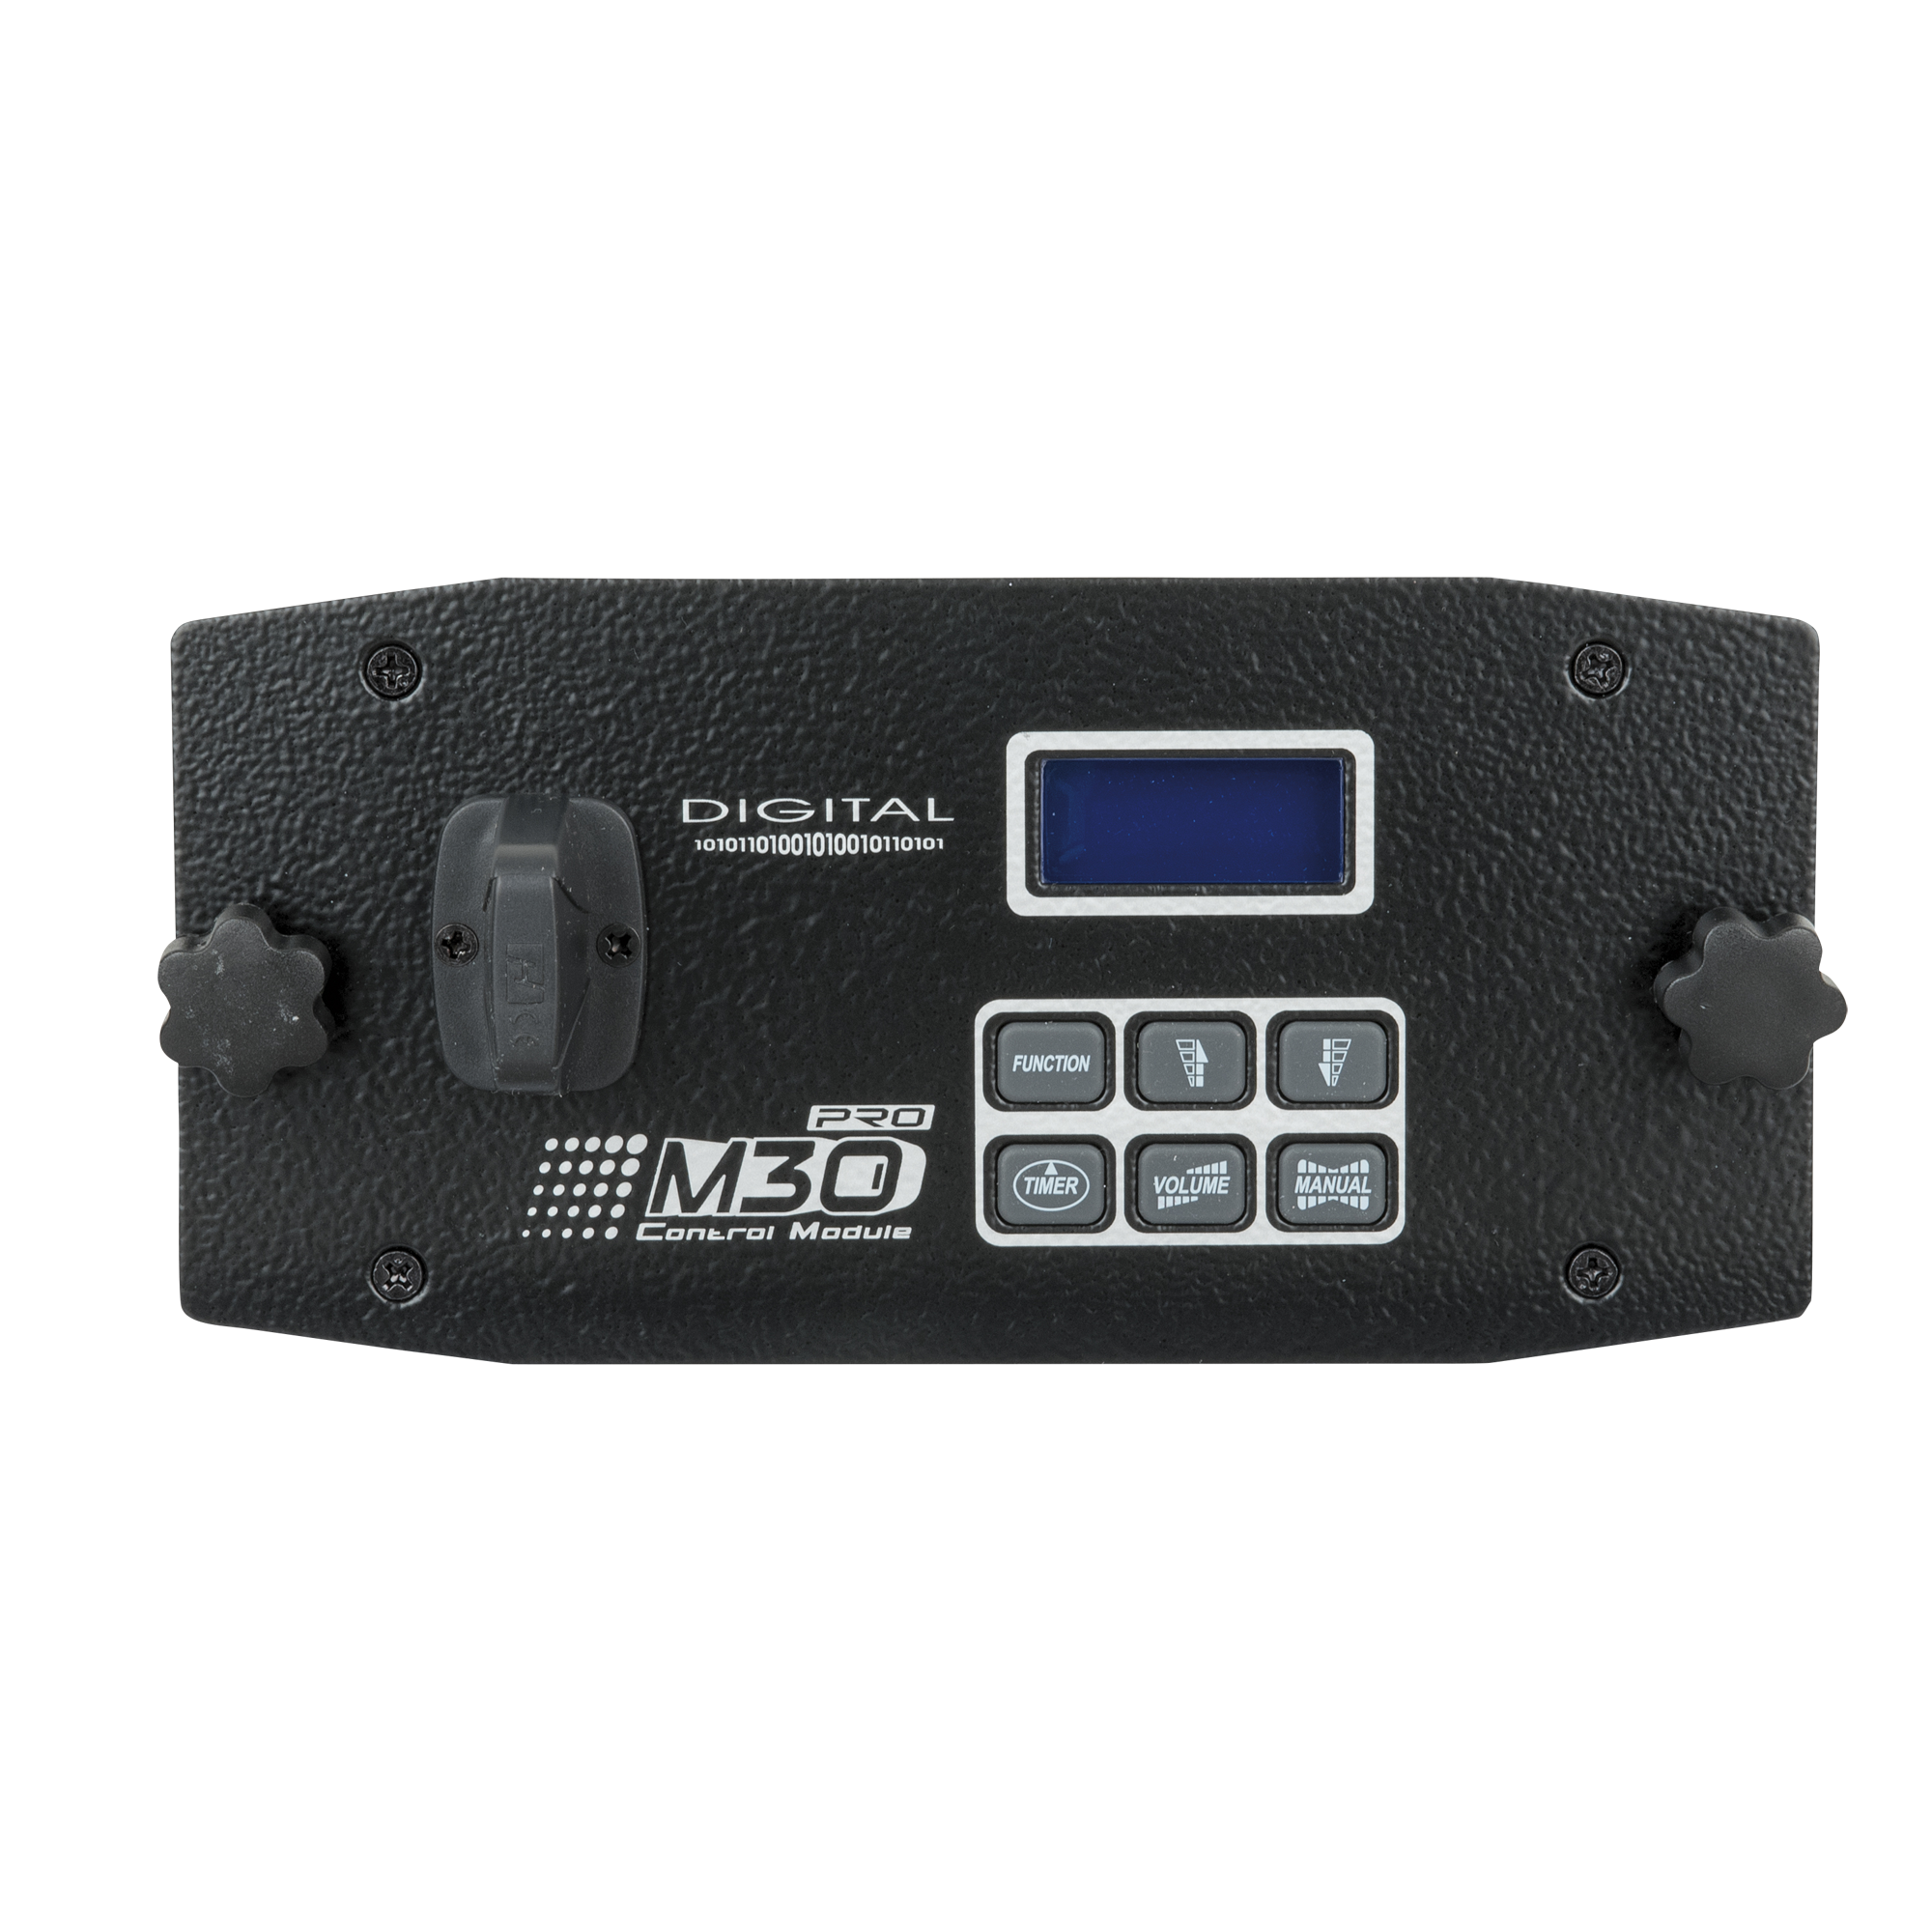 M-30 Pro Wireless Control Module - Onlinediscowinkel.nl